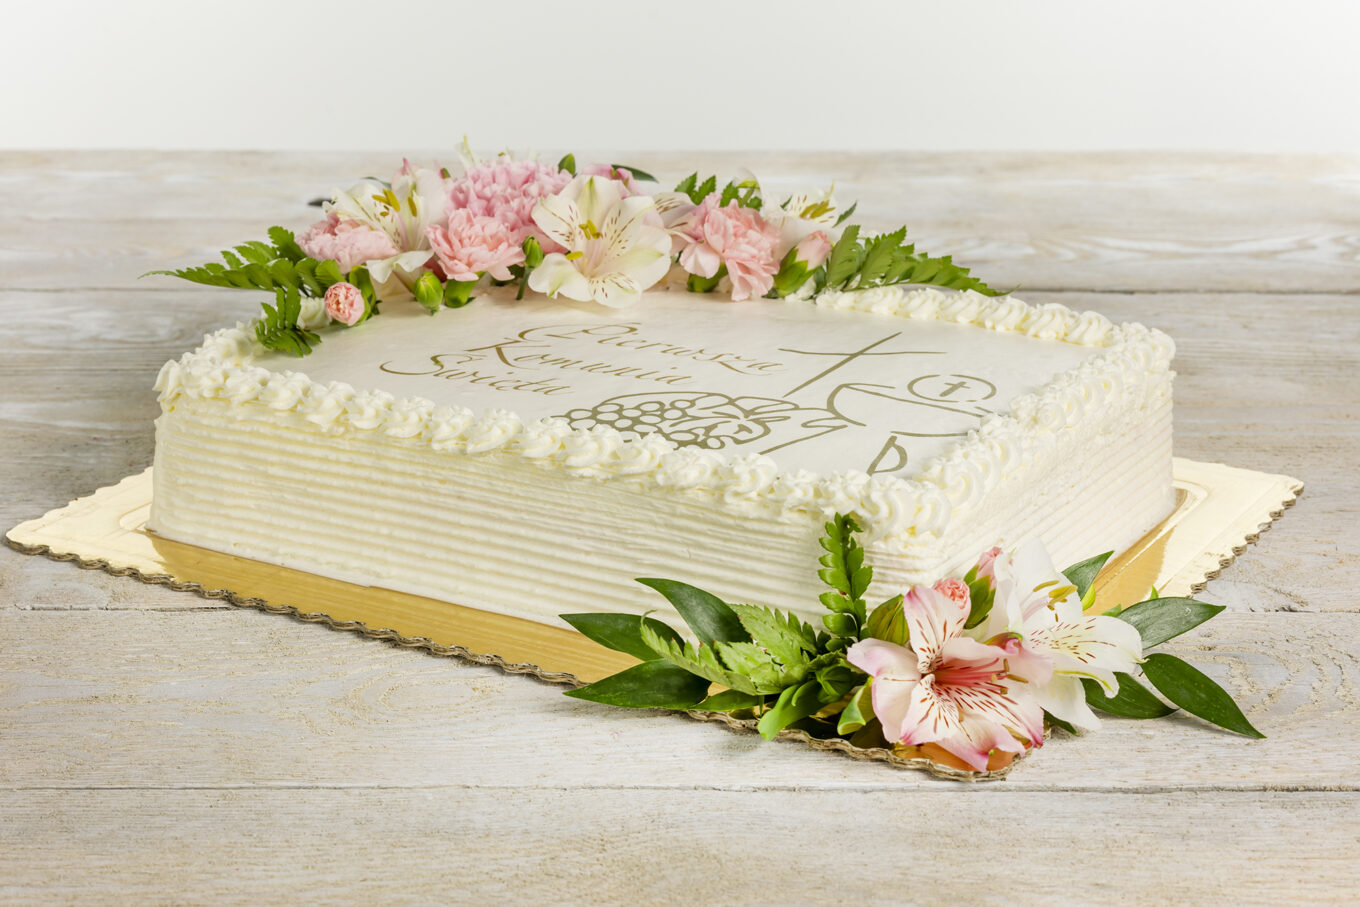 Libro de tarta para comunión Cukiernia Jacek Placek es sinónimo del sabor de las tartas caseras elaboradas con productos naturales.